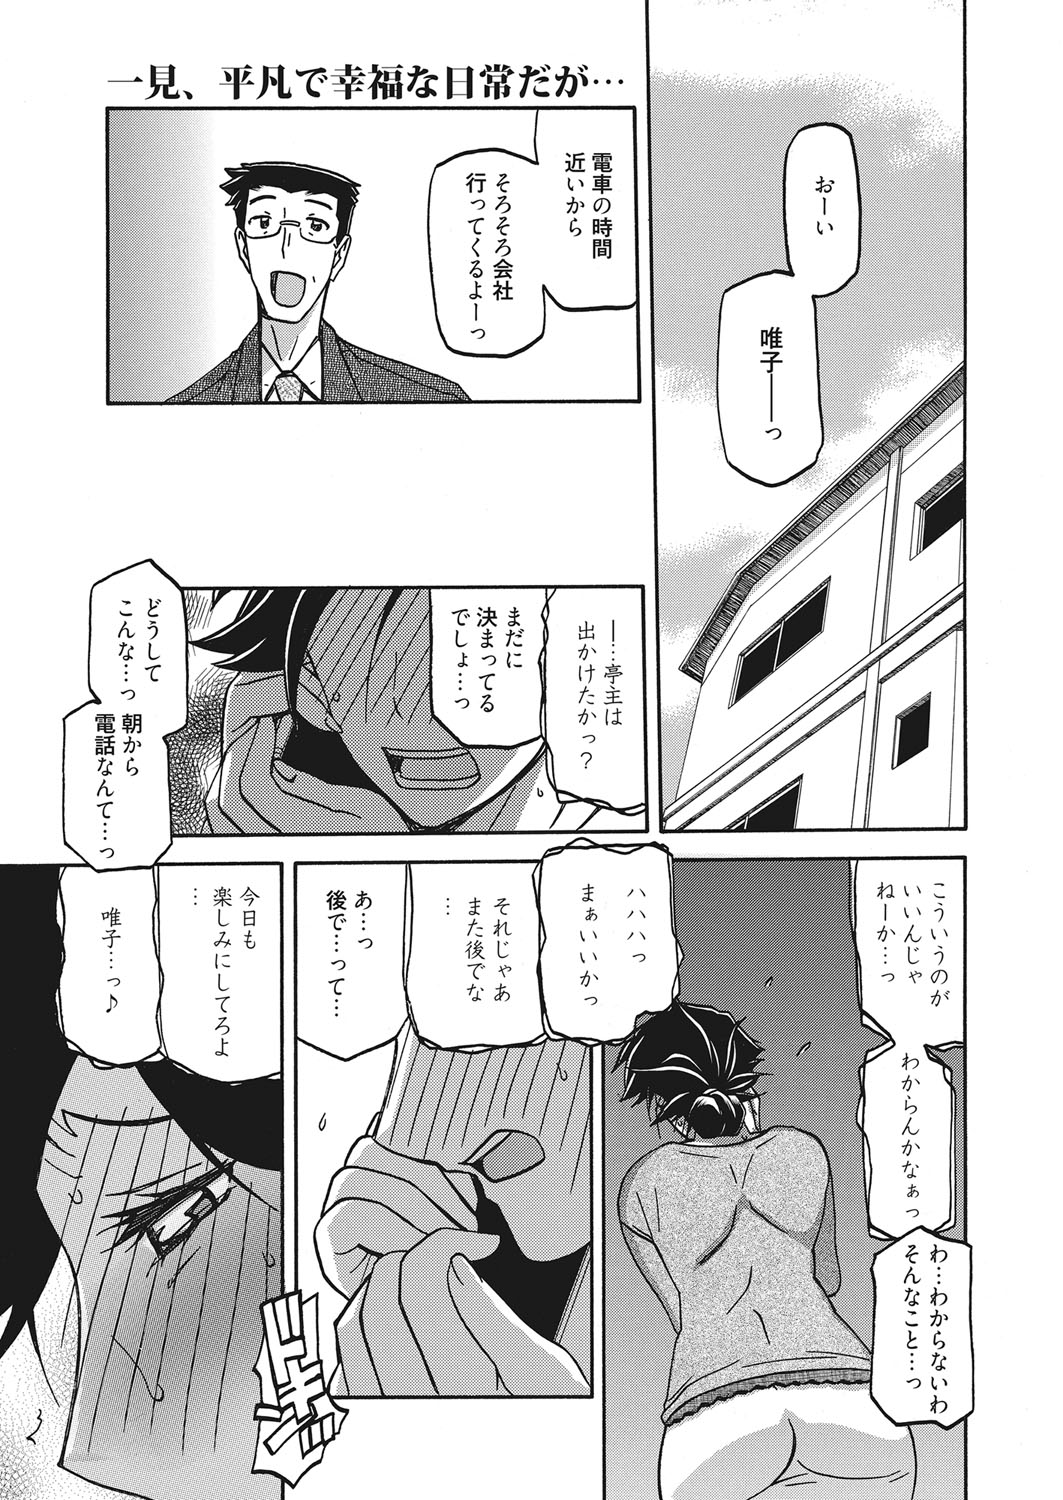 web 漫画ばんがいち Vol.18